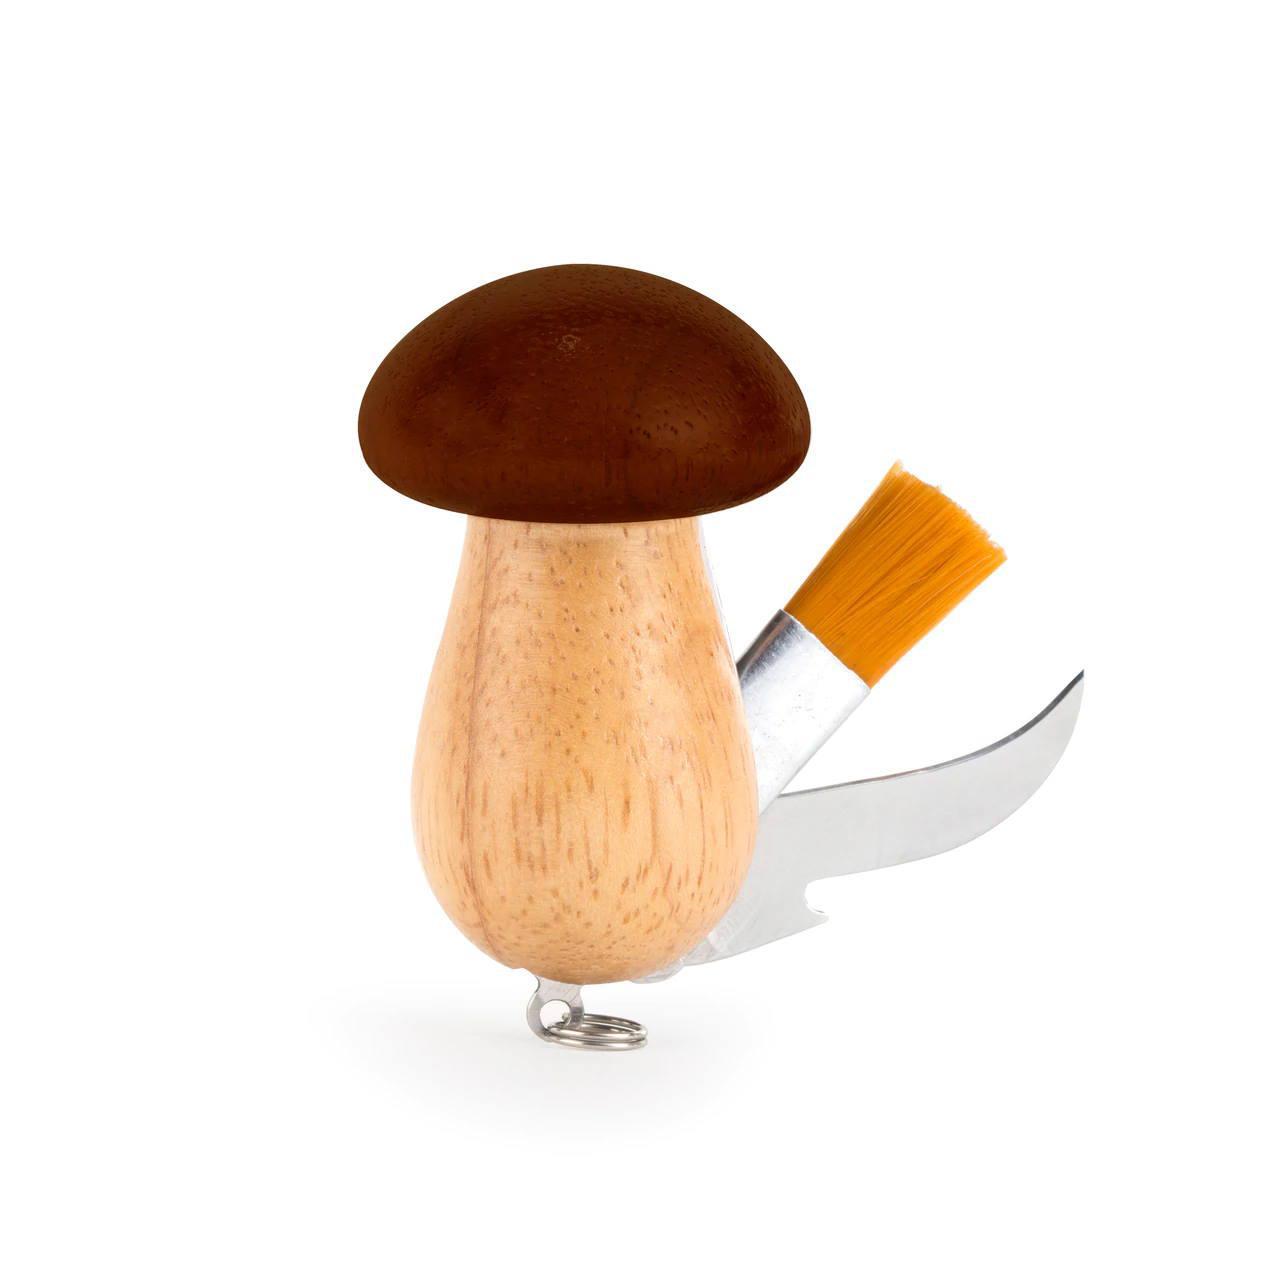 Mushroom Tool Keychain! Shaped like a mushroom.